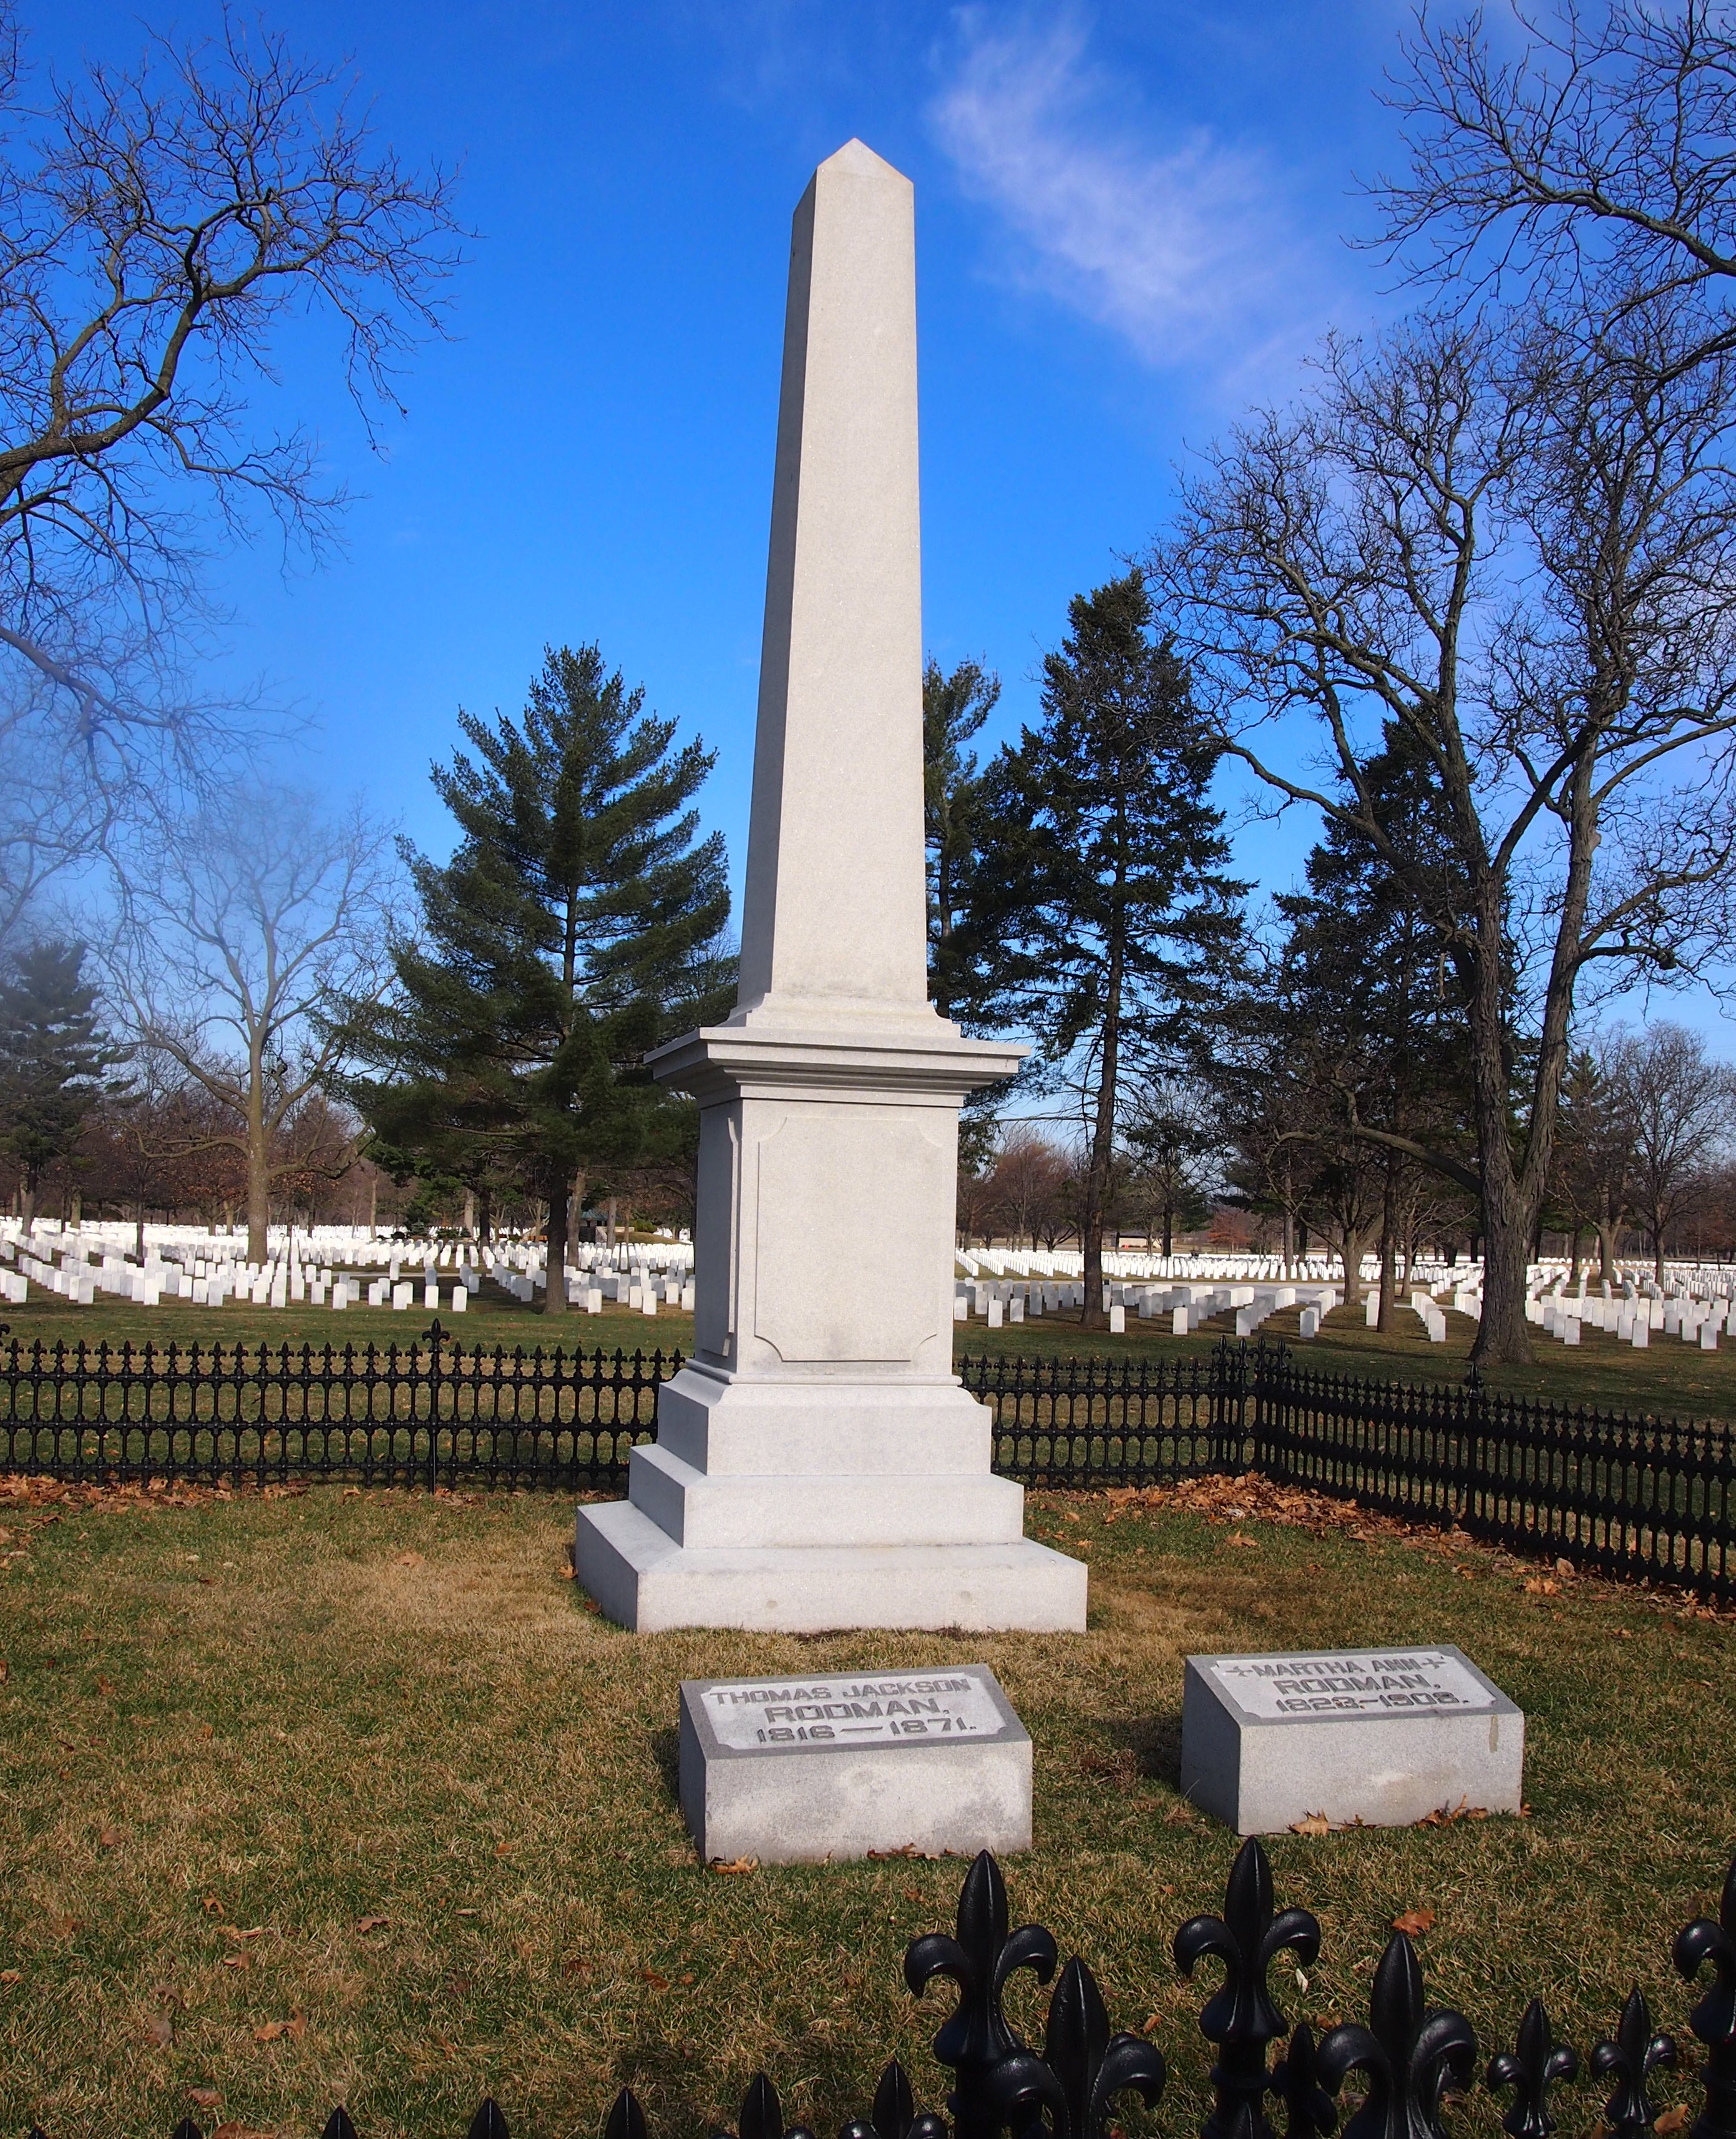 Gen. Rodman's grave